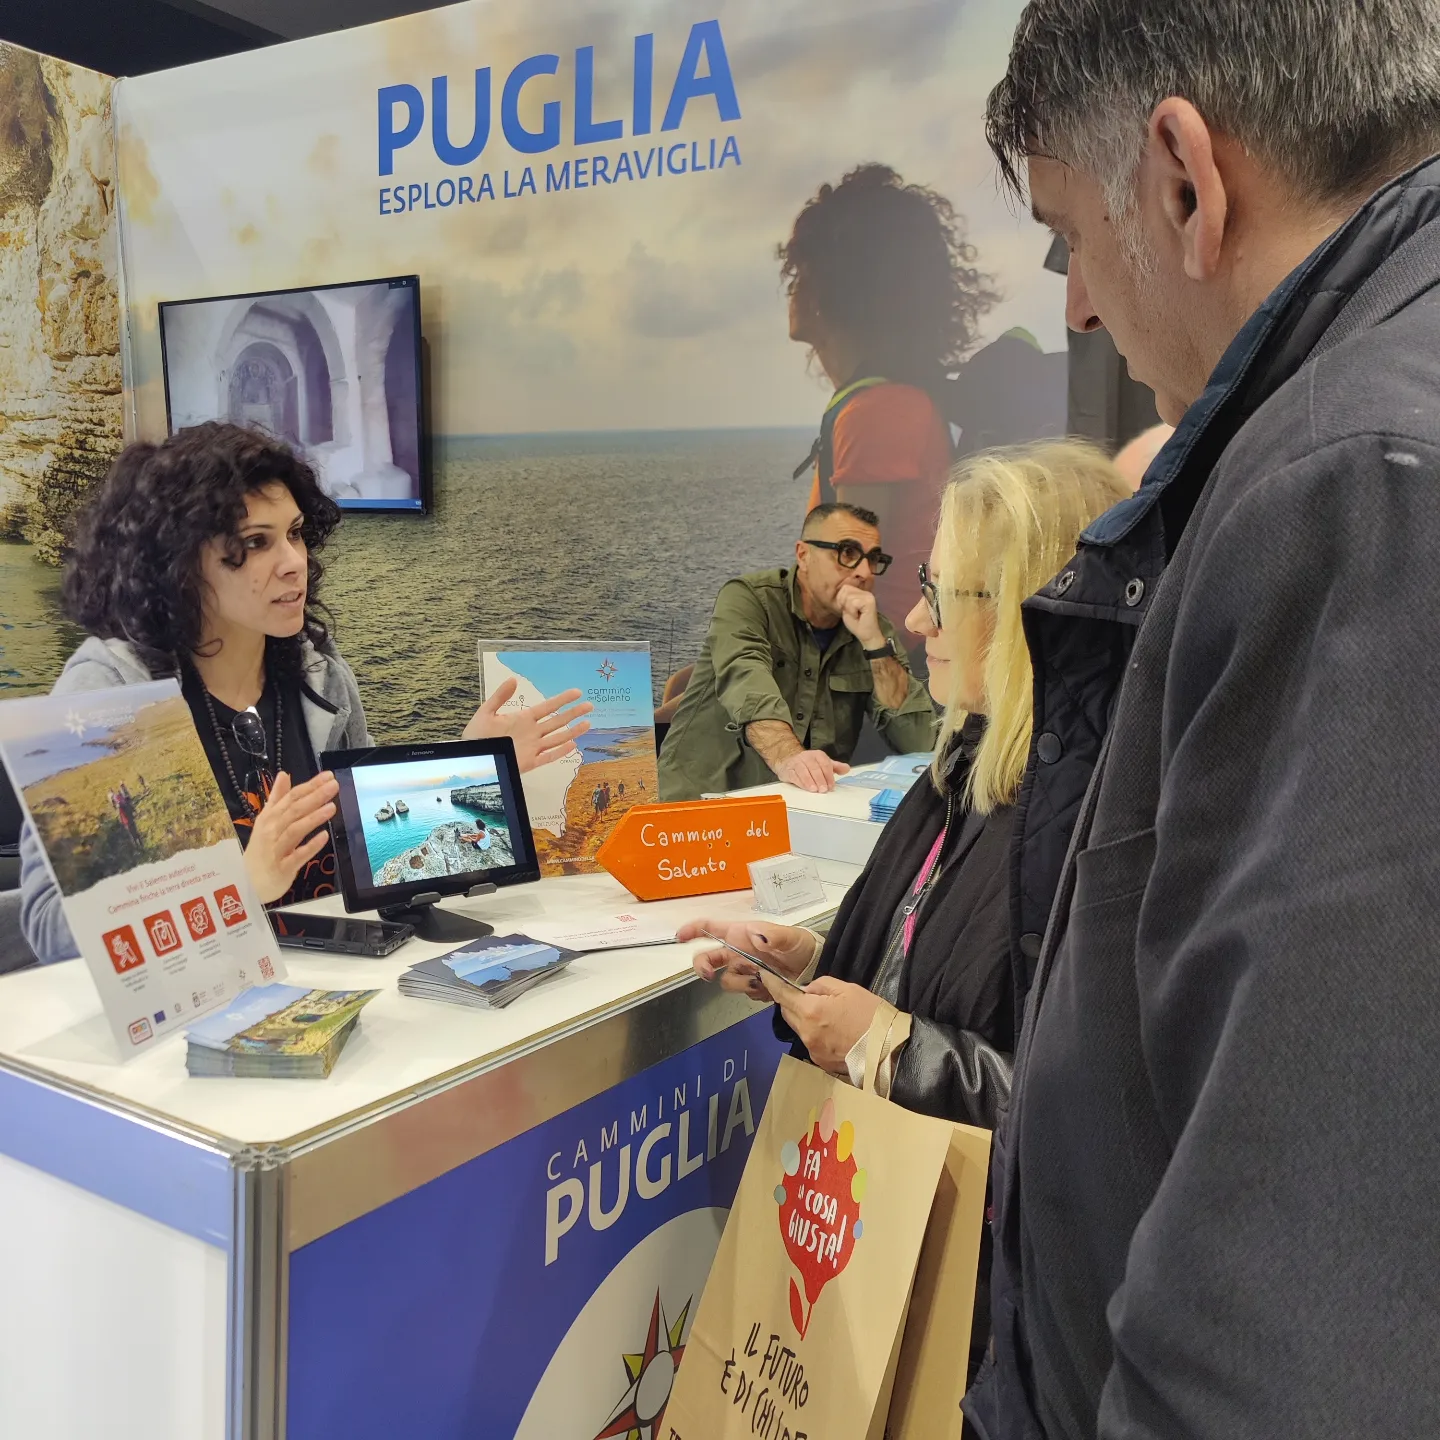 Galleria La Regione Puglia a Fa’ la cosa giusta! Presentati a Milano i dati dei cammini per il 2022, la Puglia cresce del 24% - Diapositiva 13 di 13